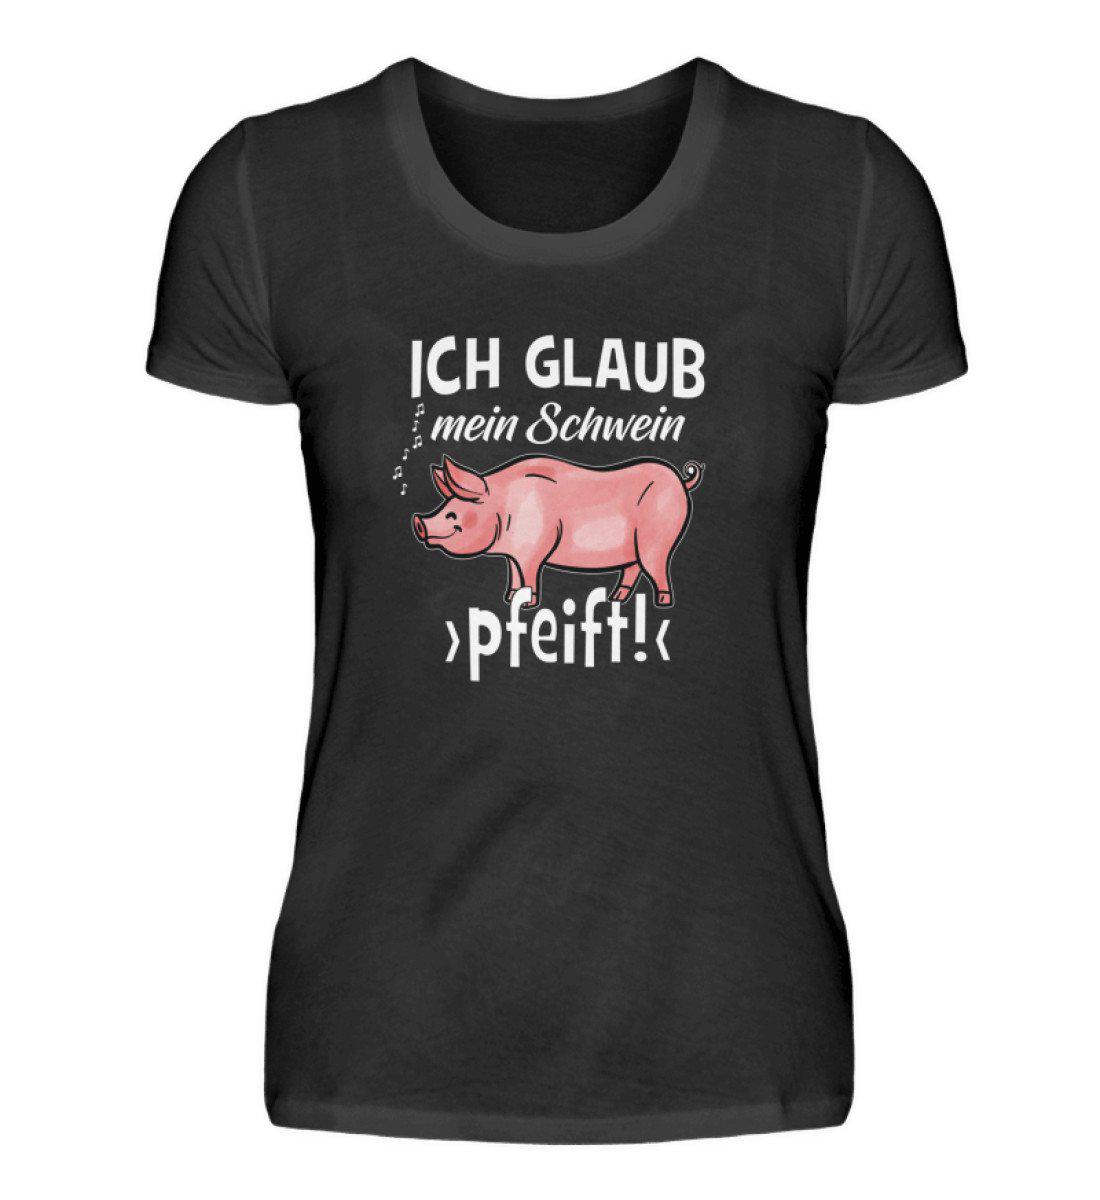 Ich glaub mein Schwein pfeift · Damen T-Shirt-Damen Basic T-Shirt-Black-S-Agrarstarz